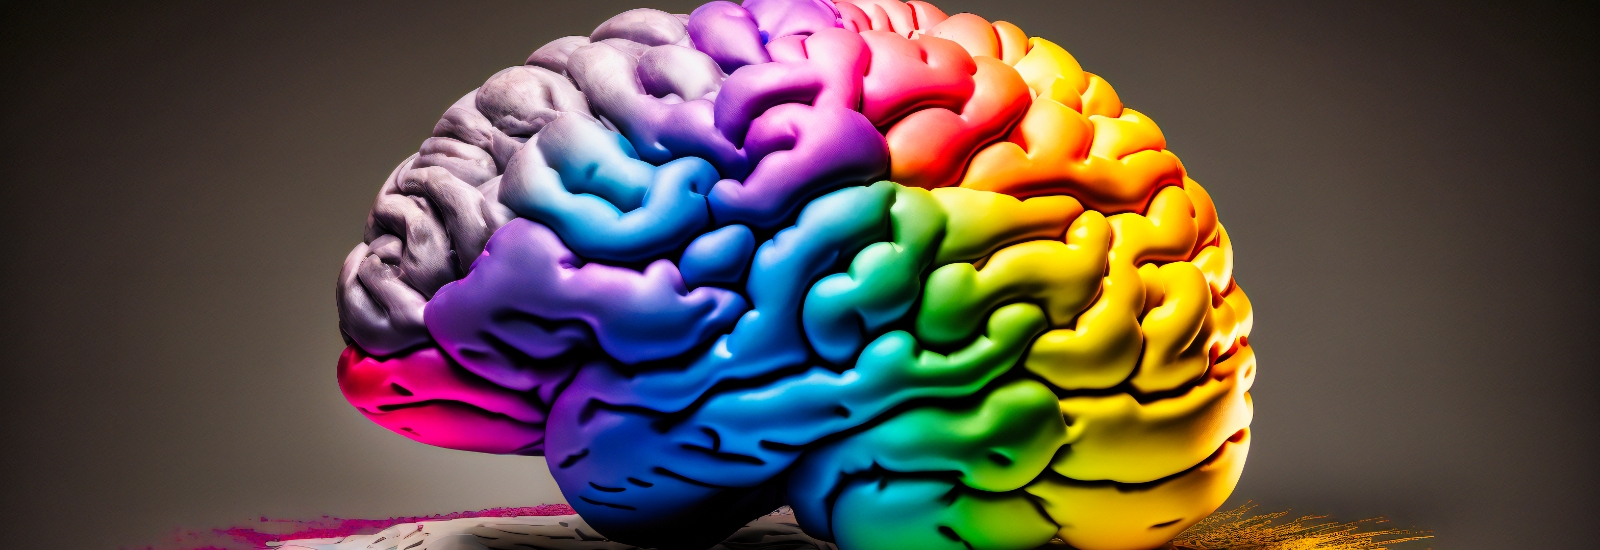 跨領域學習意境照片，一顆大腦充滿各種顏色